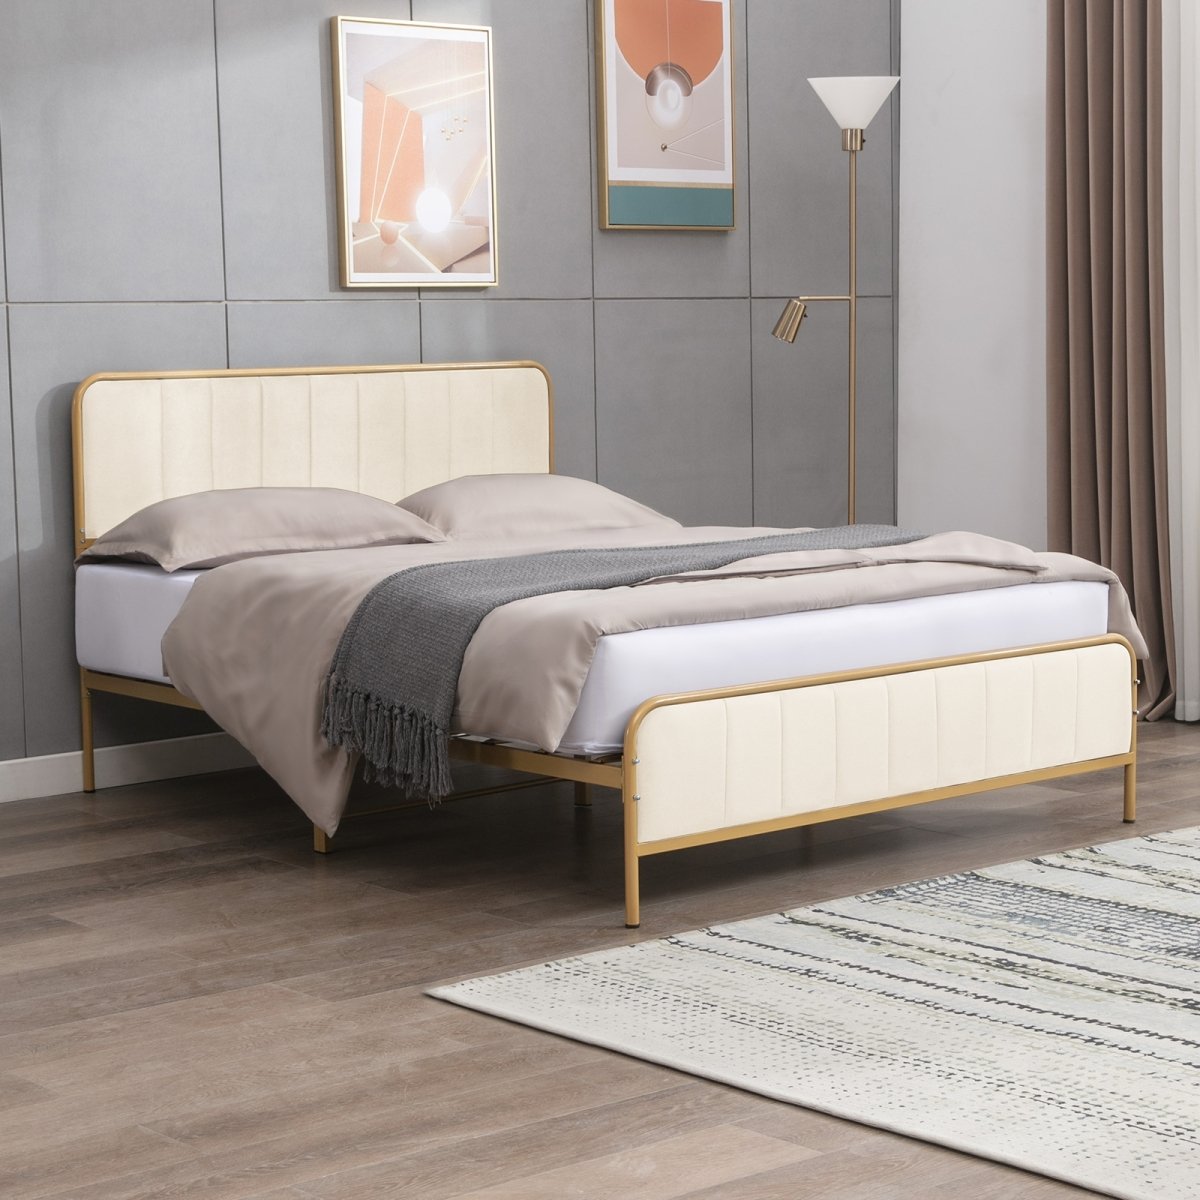 Bed Frame | Velvet Upholstered Metal Platform Bed with Tufted Headboard and Gold Trim - Mjkonebed frame